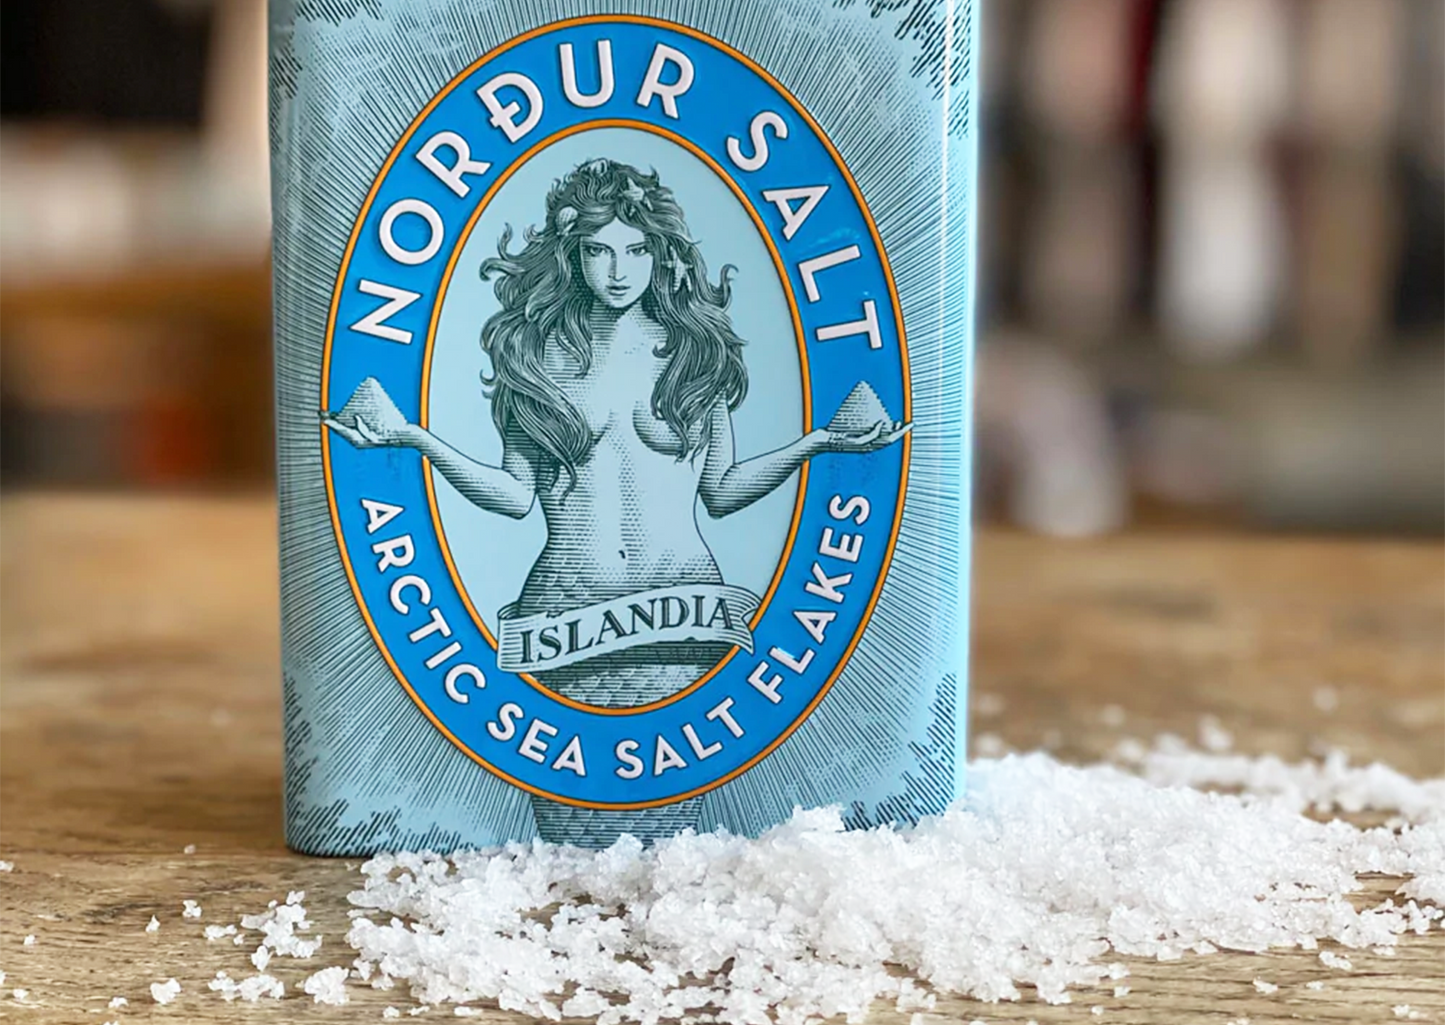 
                  
                    Nordur Salt 250g Tin
                  
                